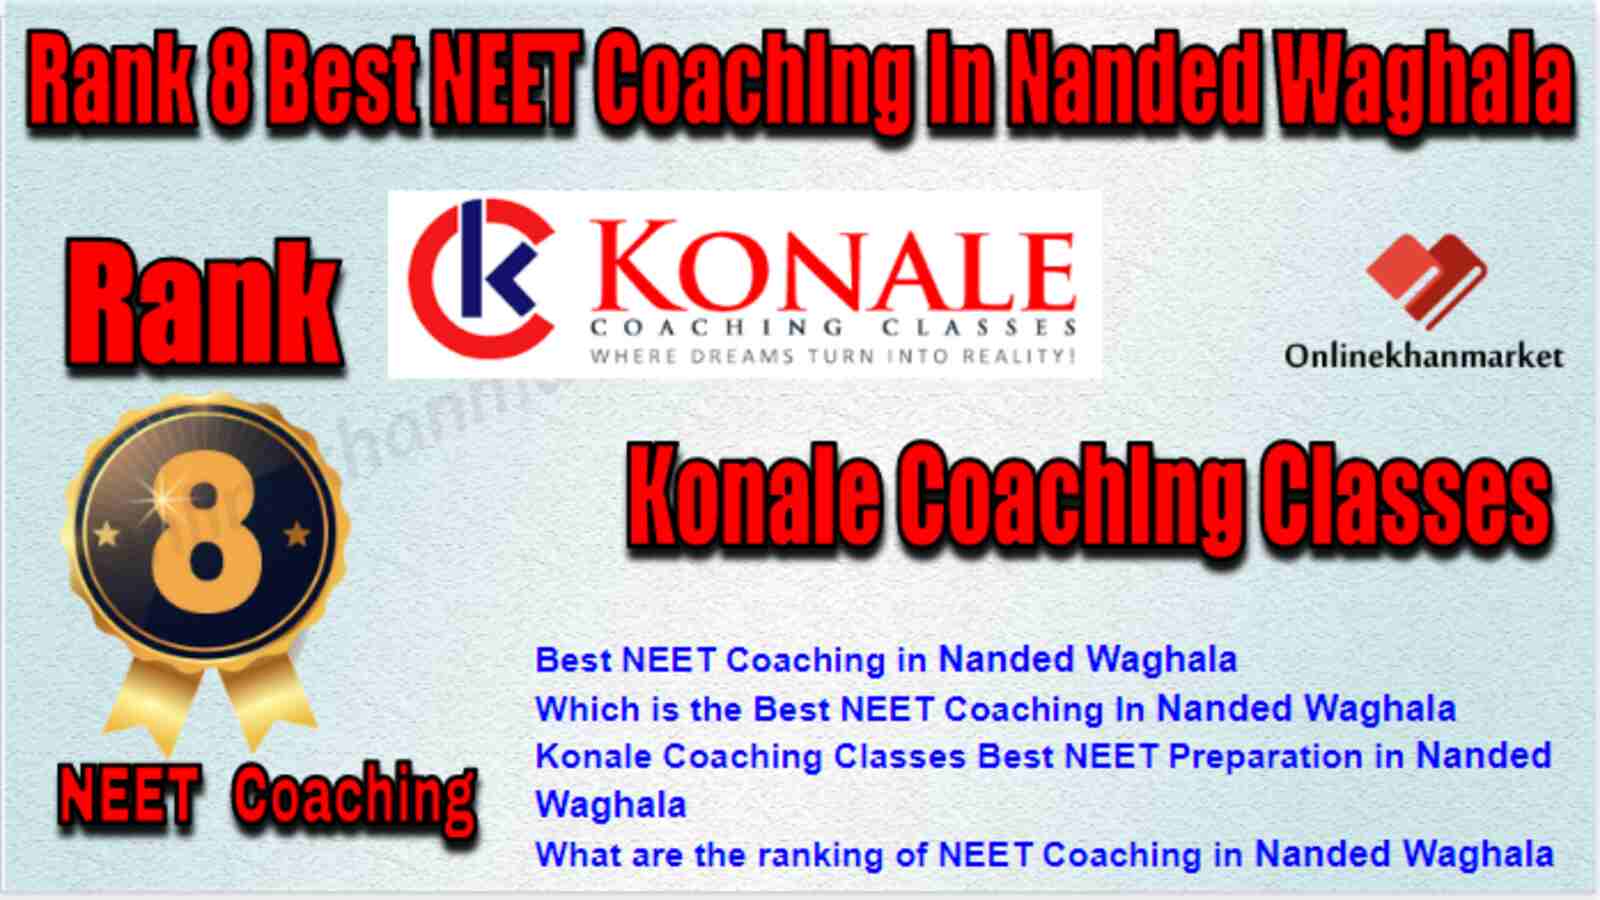 Rank 8 Best NEET Coaching in Nanded Waghala